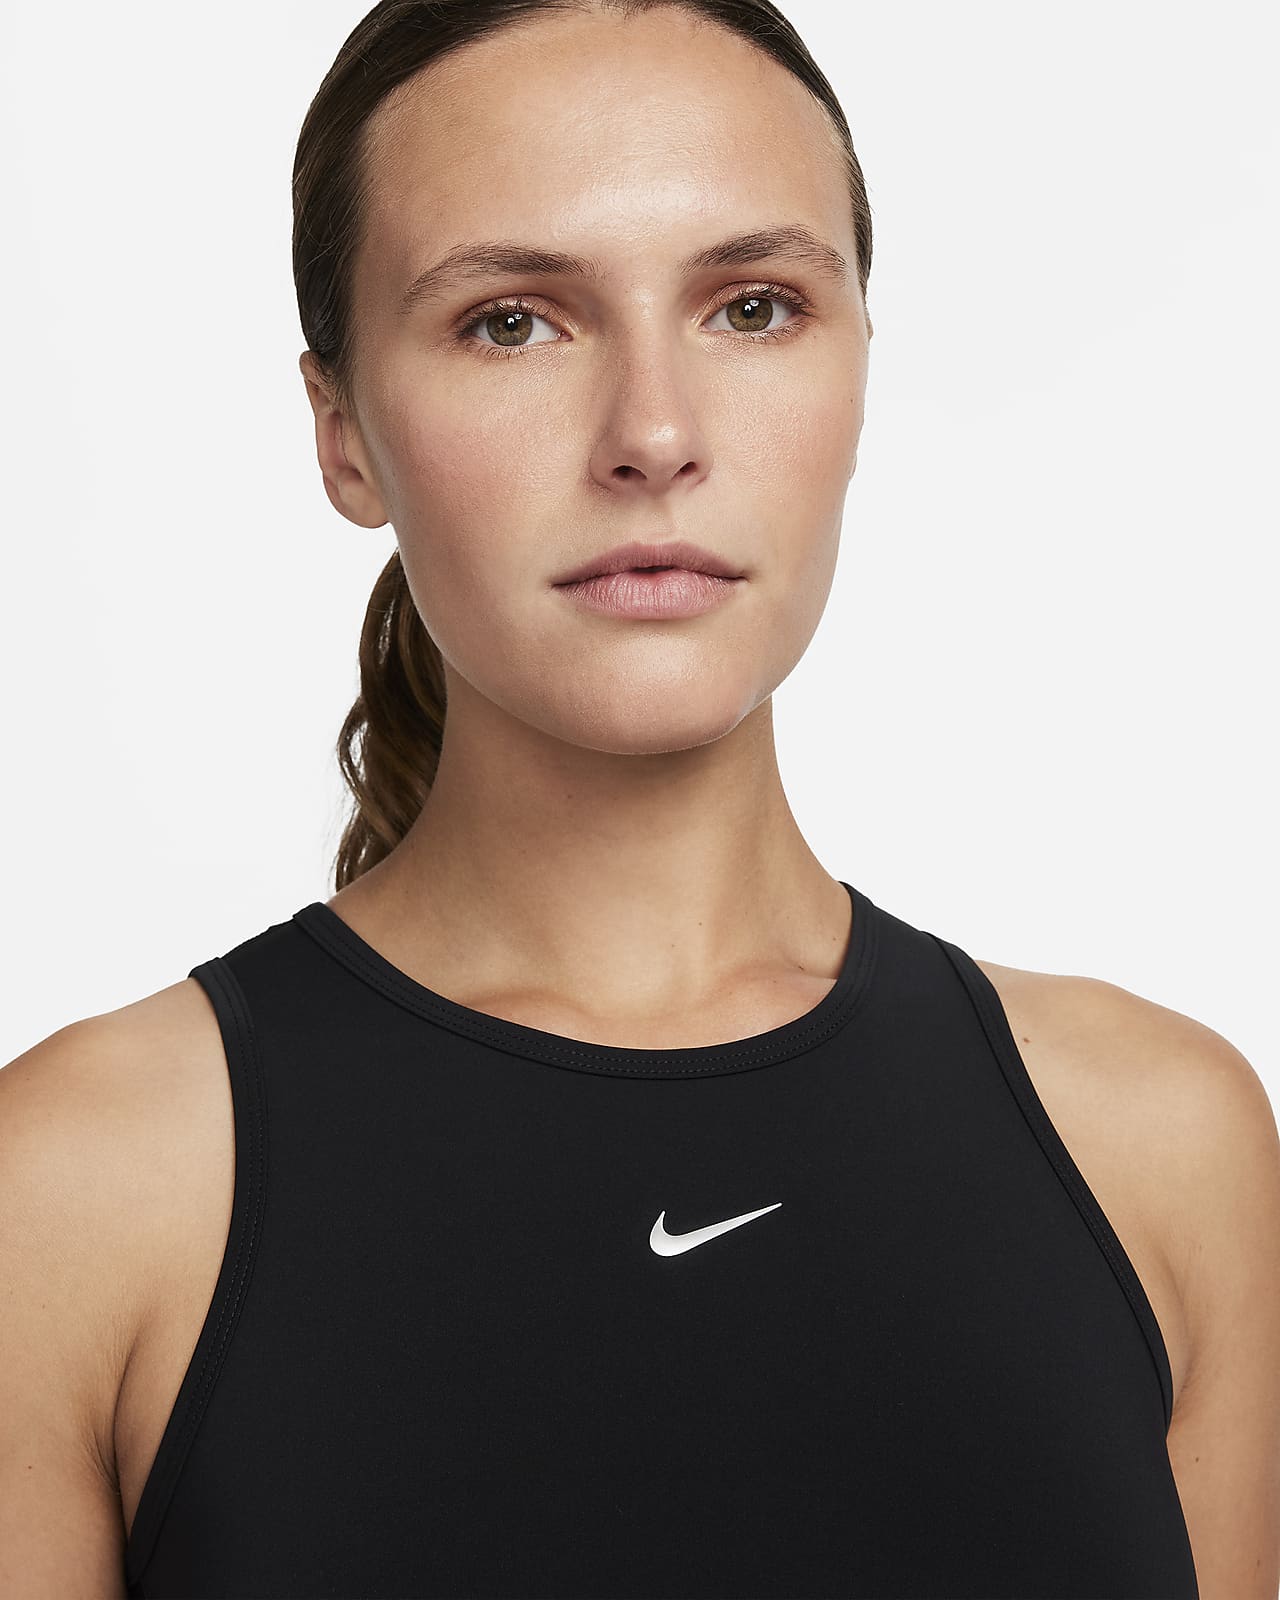 Nike Pro Dri-FIT Women's Cropped Tank Top